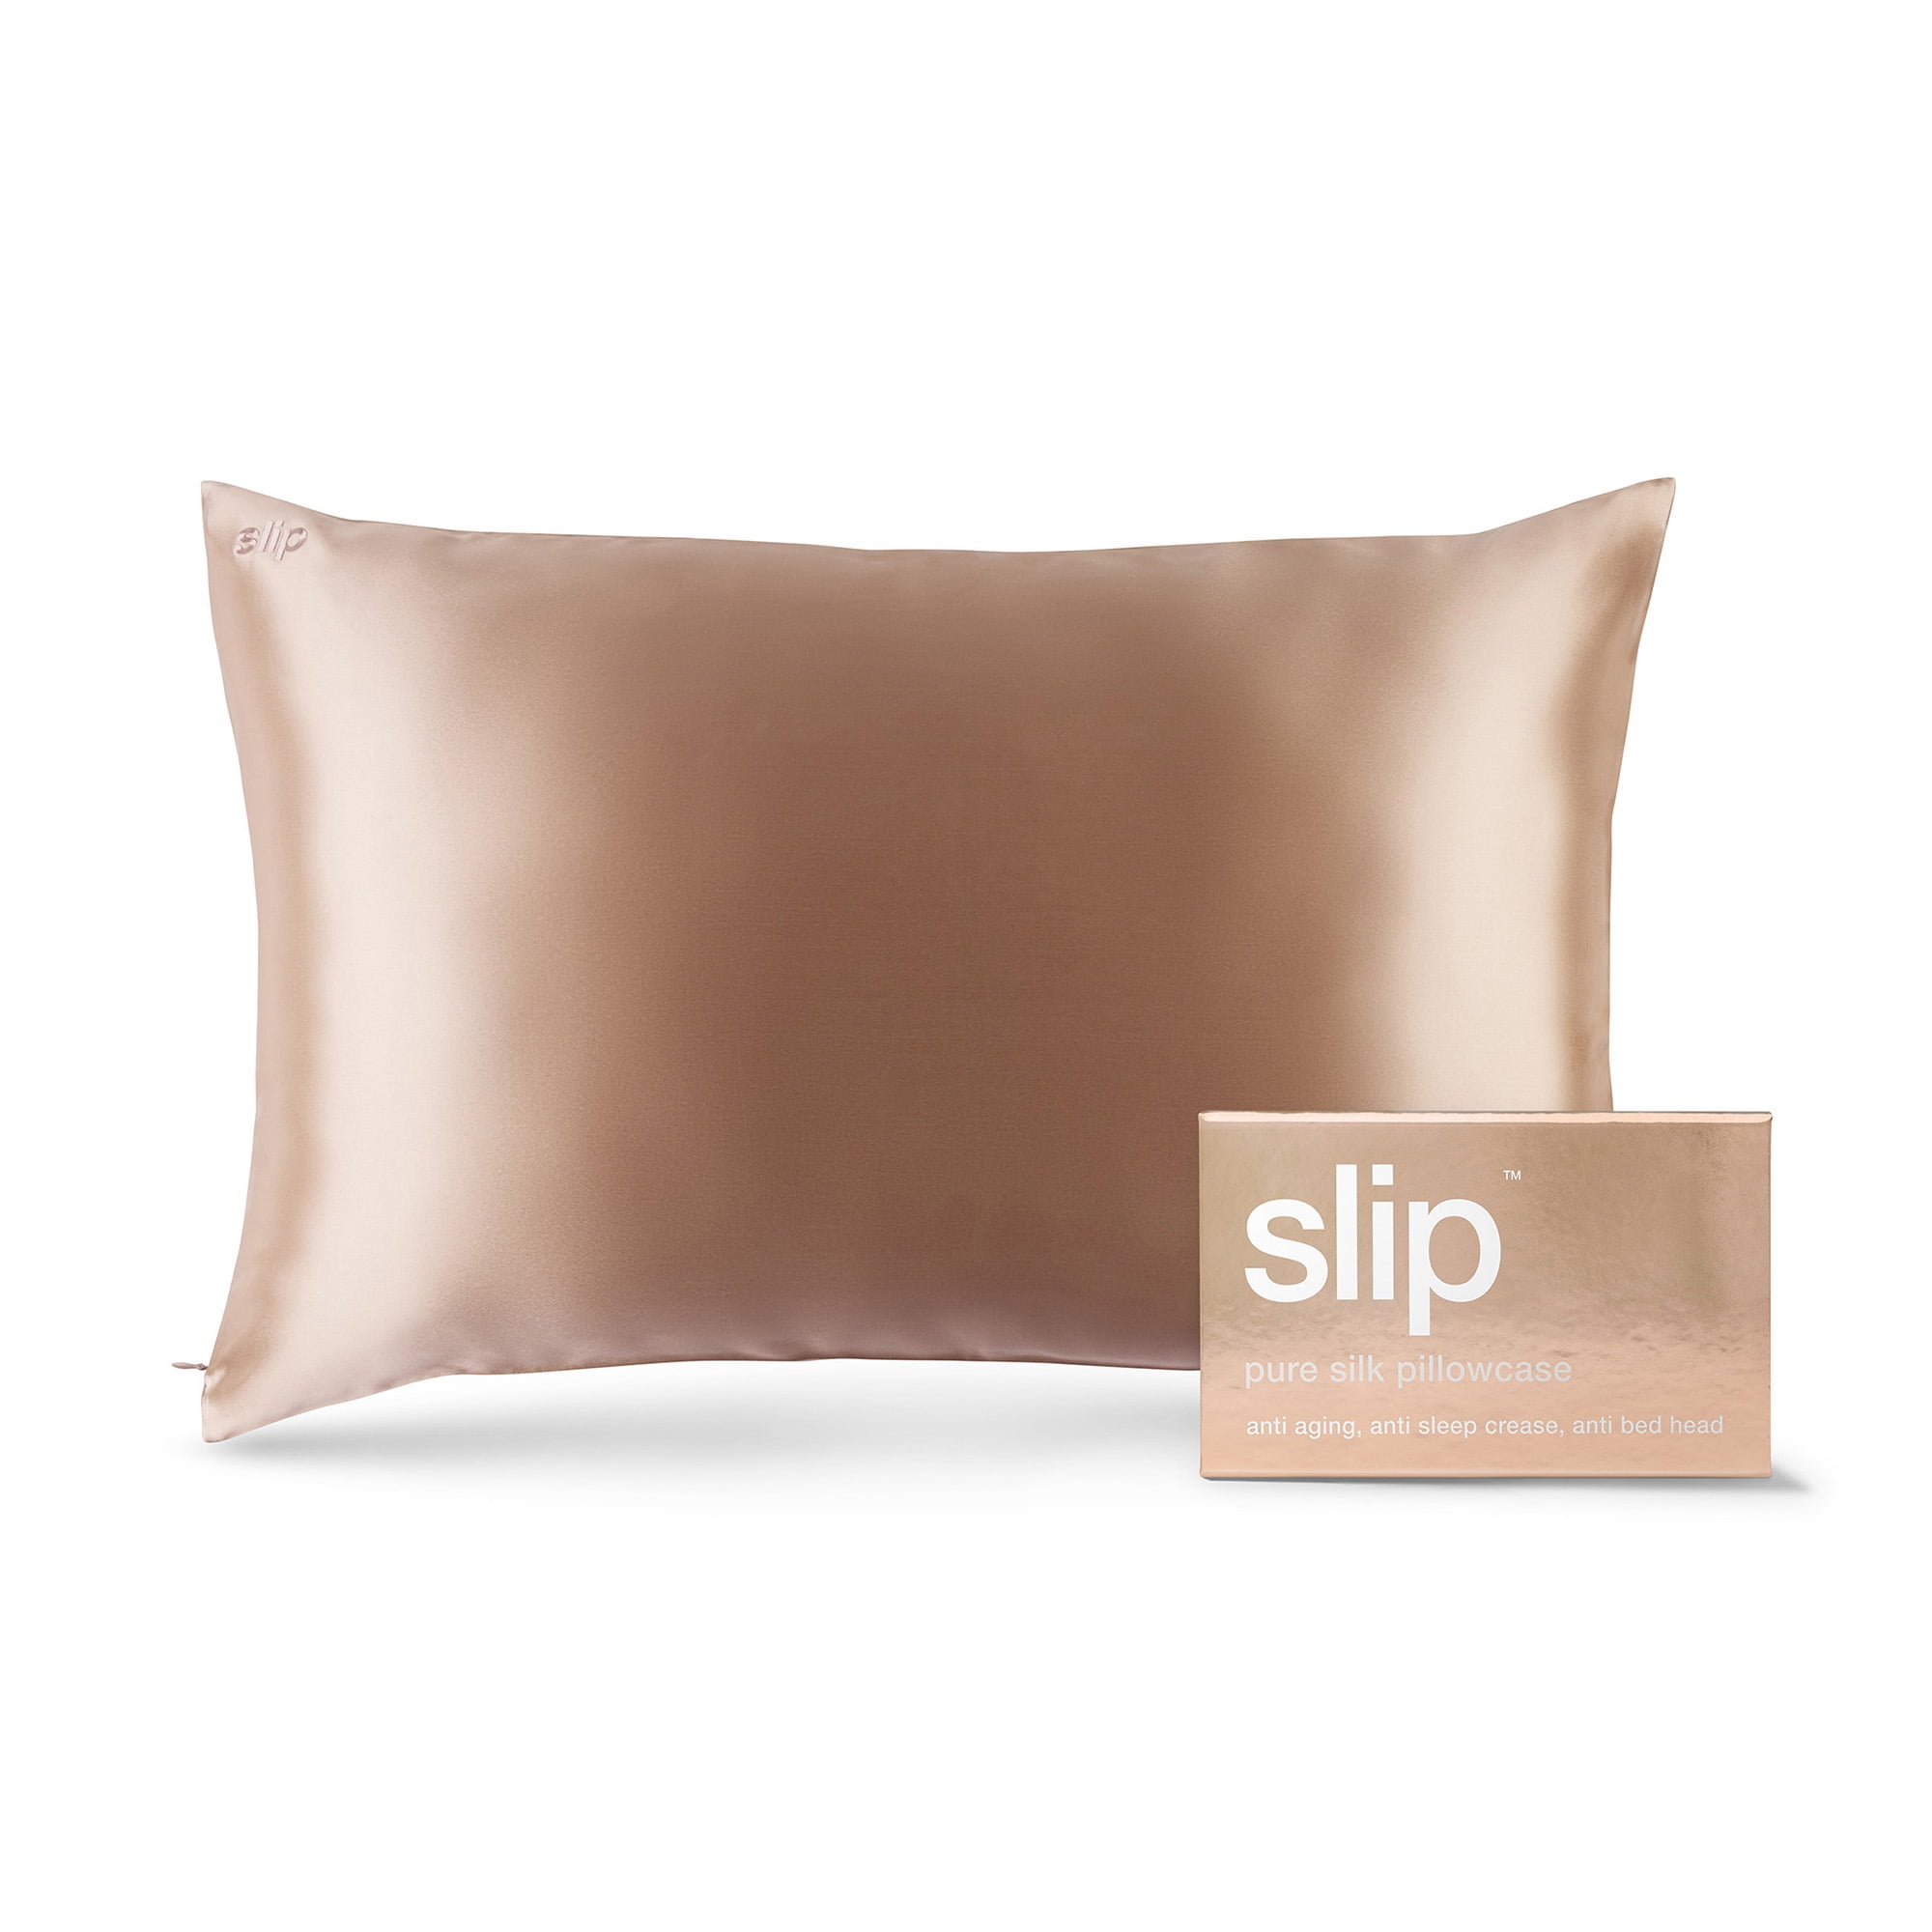 Slip Pure Silk Pillowcase Bedding, Silver, Queen 